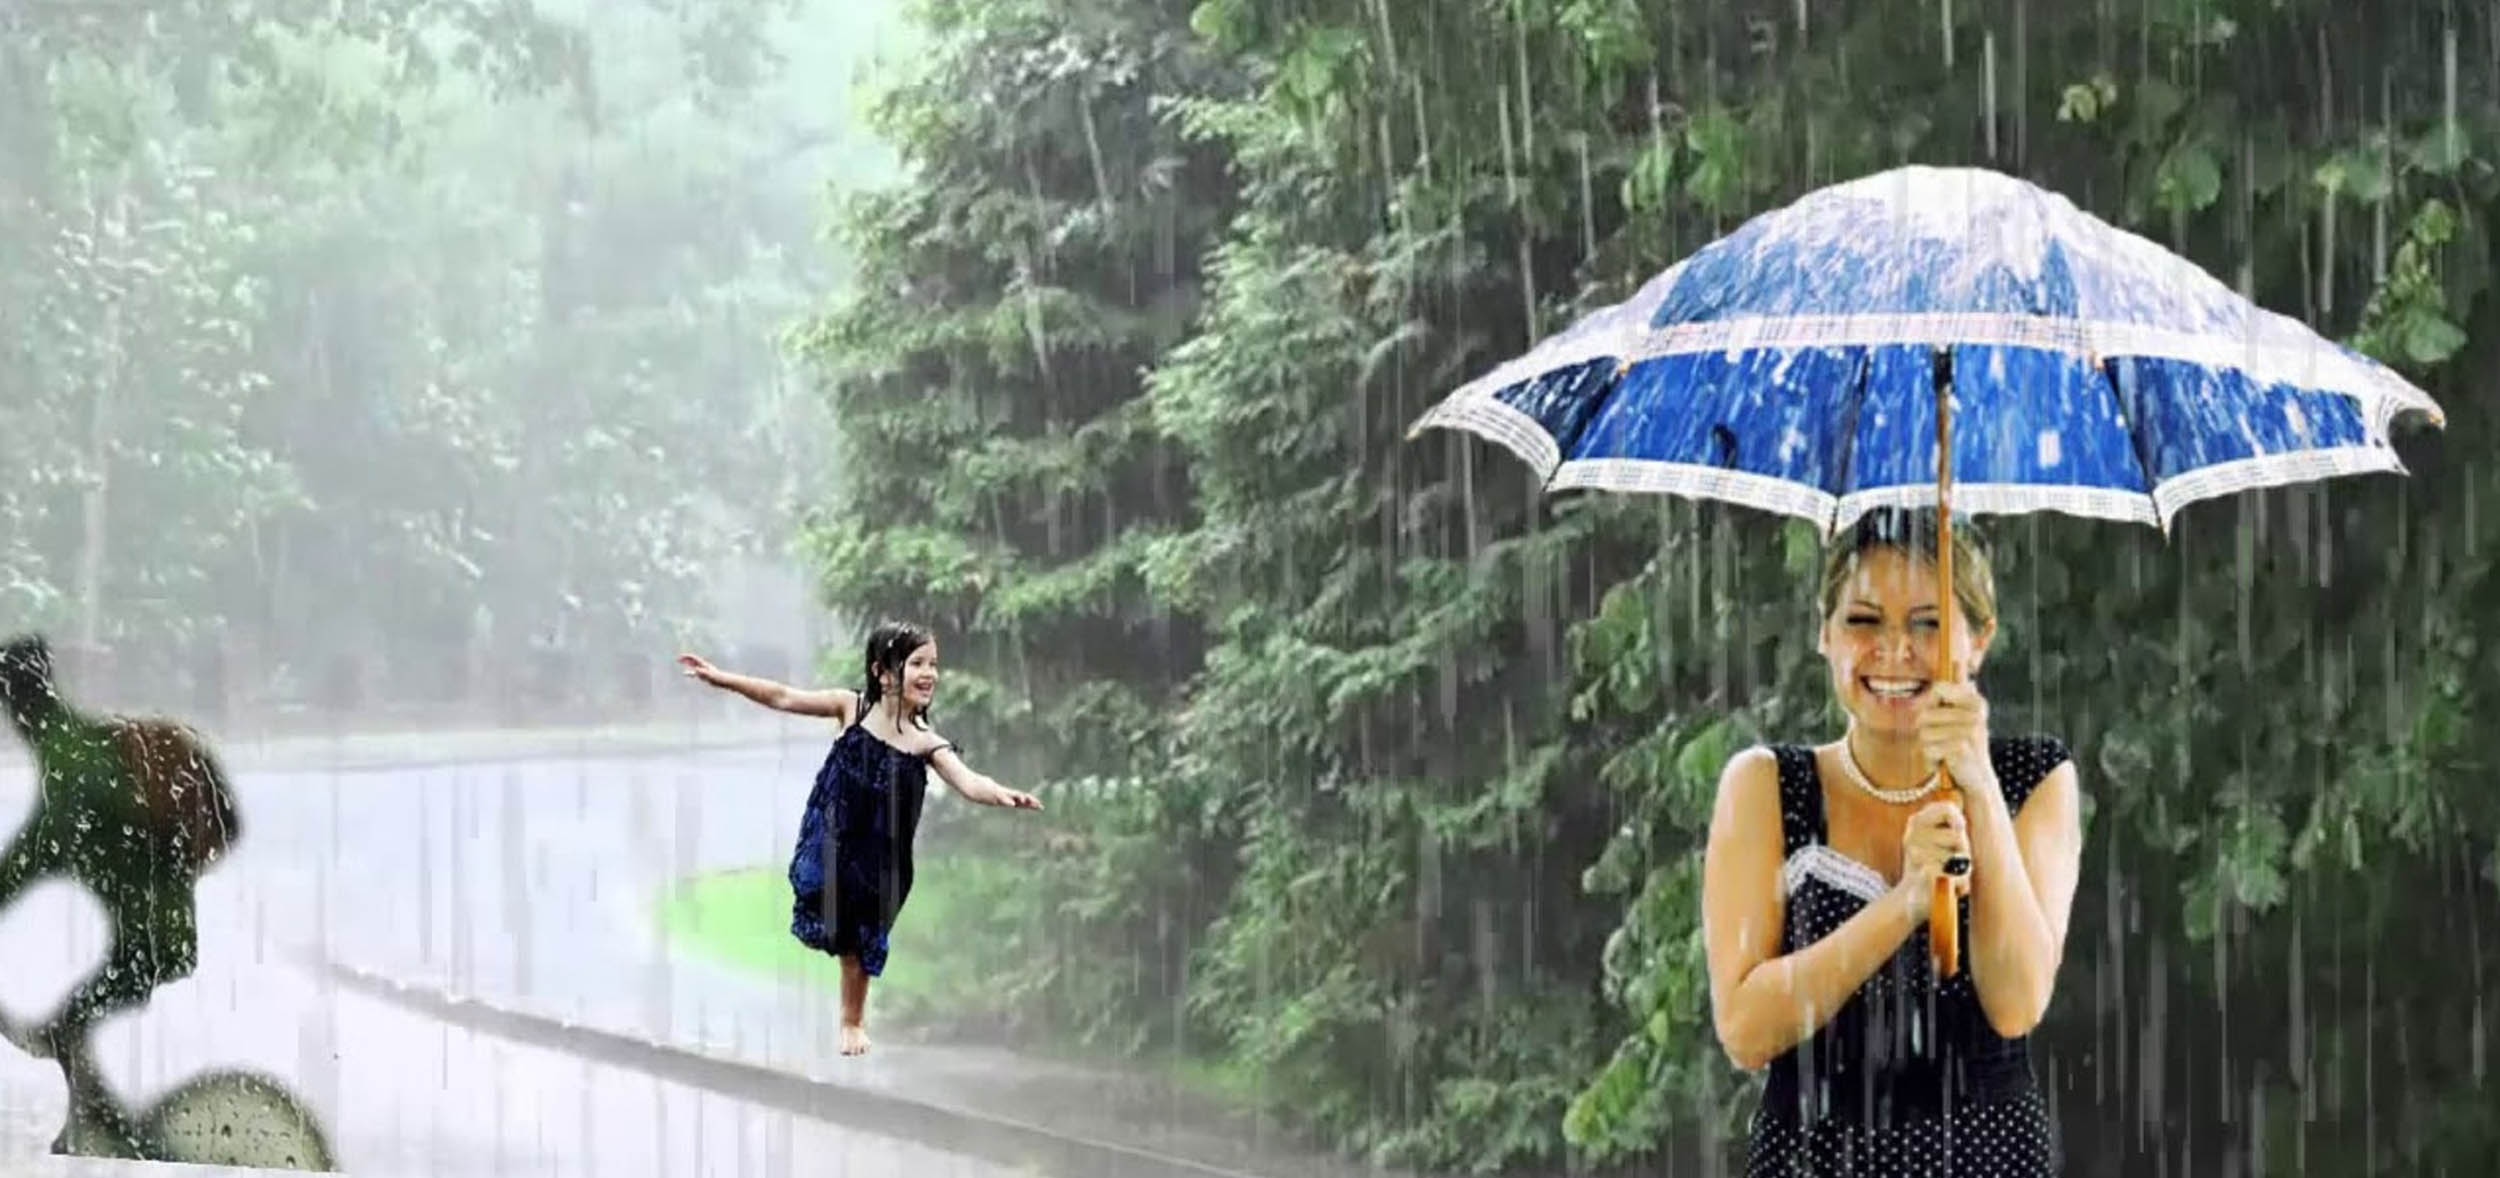 Дождик что делает. Человек под зонтиком. Дождливый летний день. Дождливое лето. Под летним дождем.